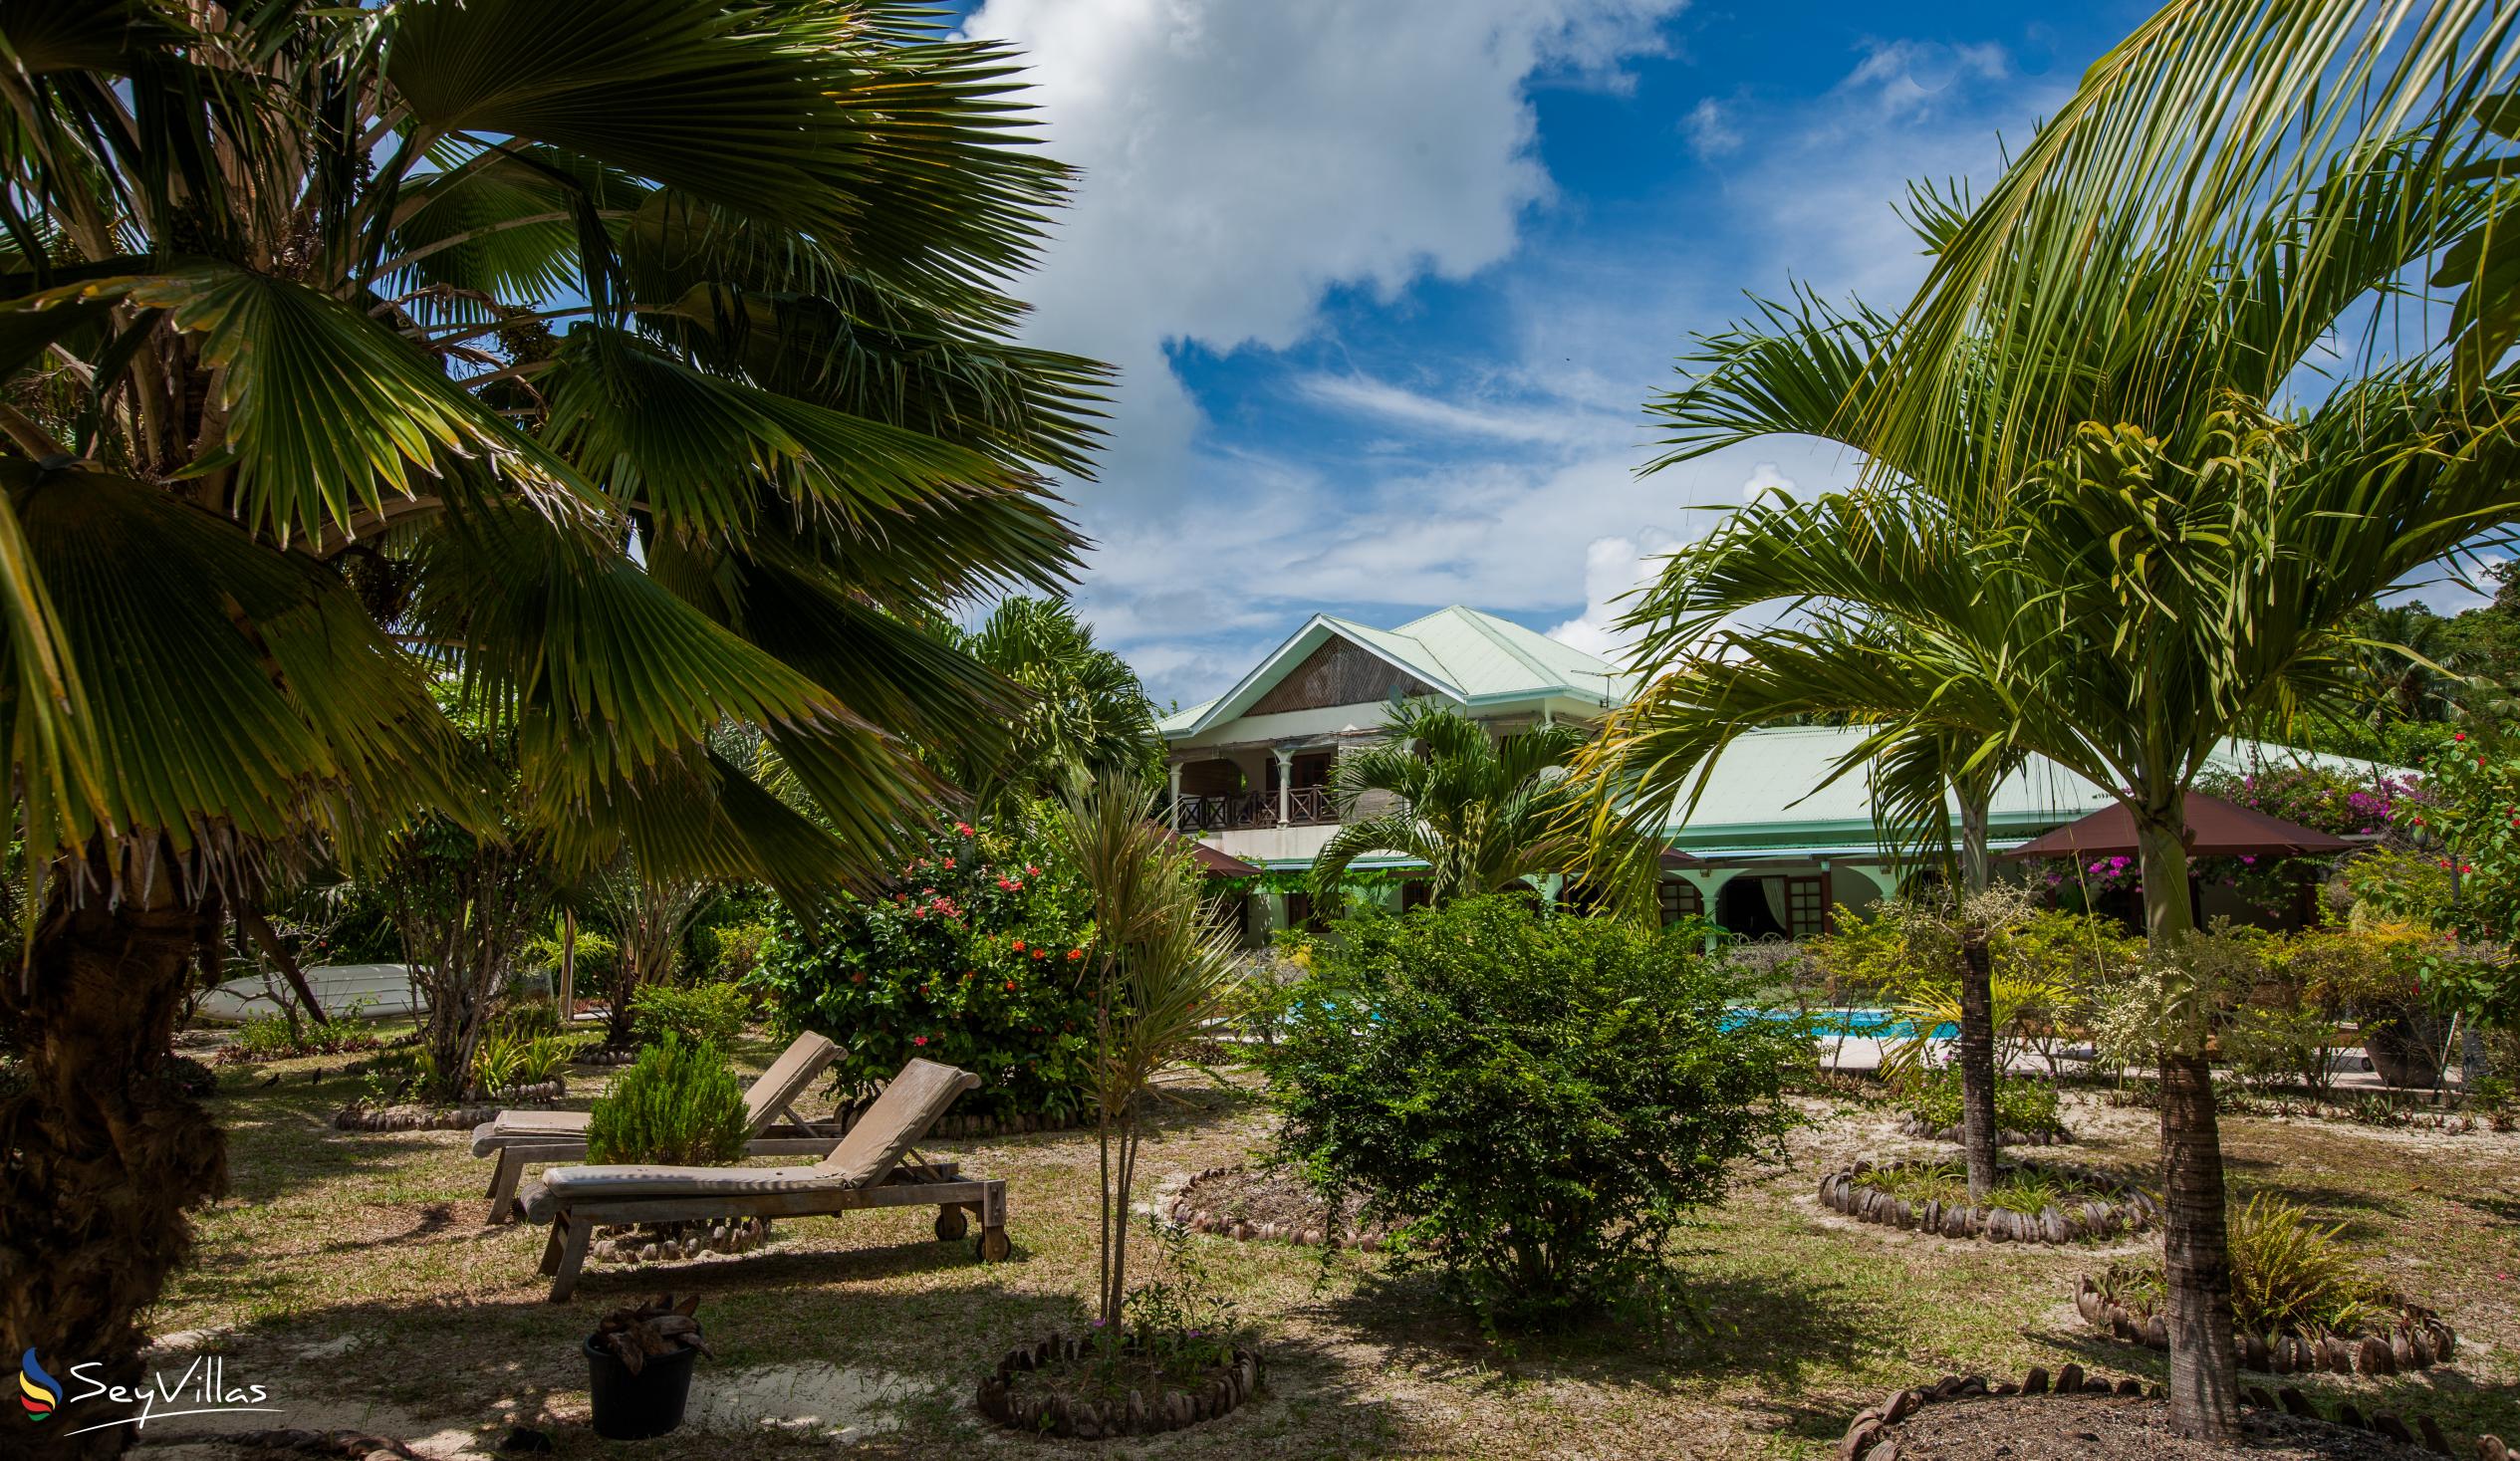 Foto 11: Villa de Cerf - Esterno - Cerf Island (Seychelles)